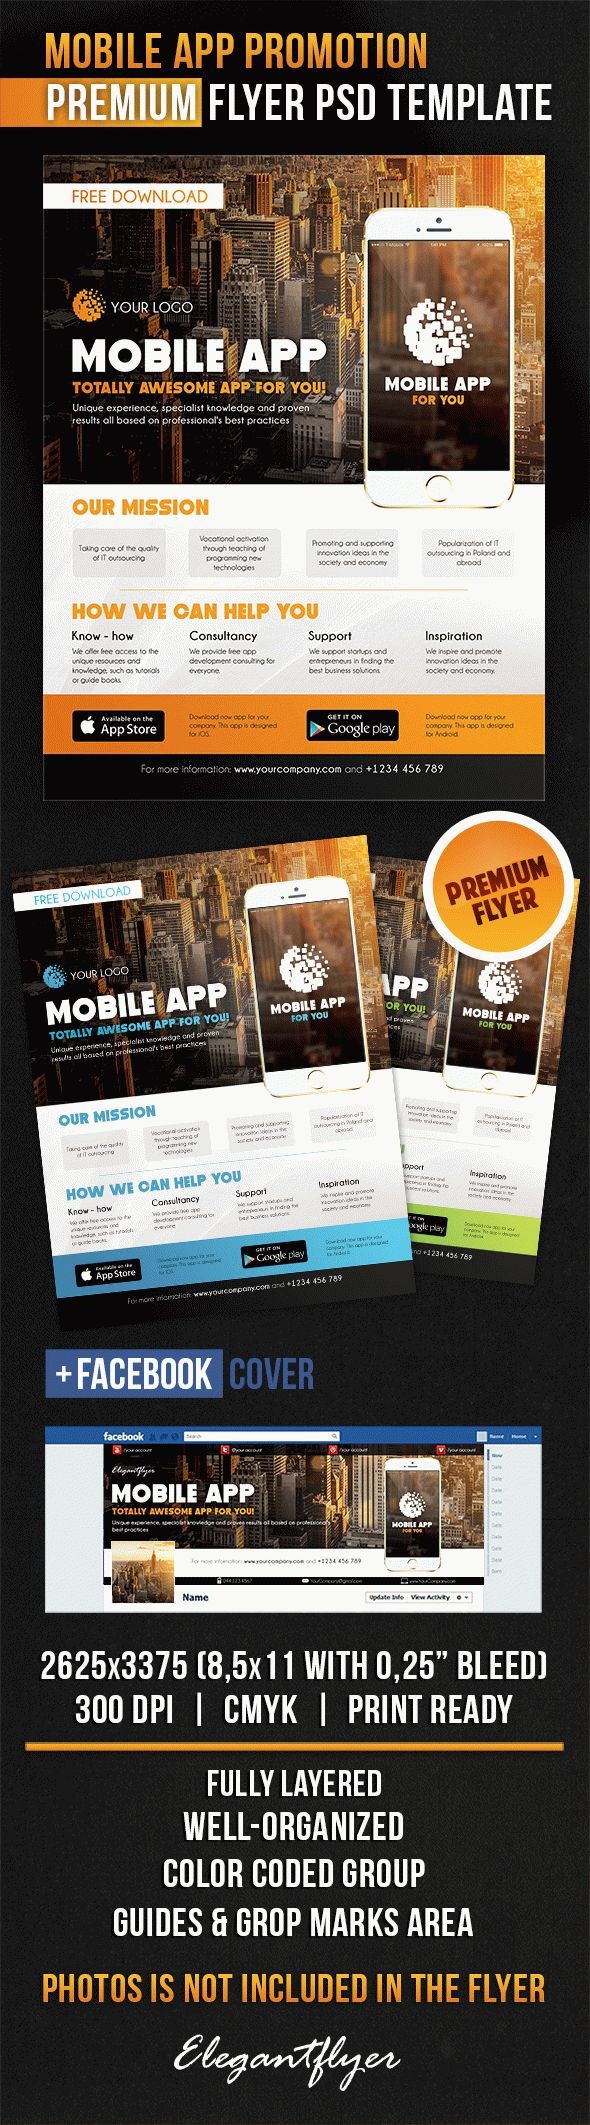 Mobile App Promotion by ElegantFlyer